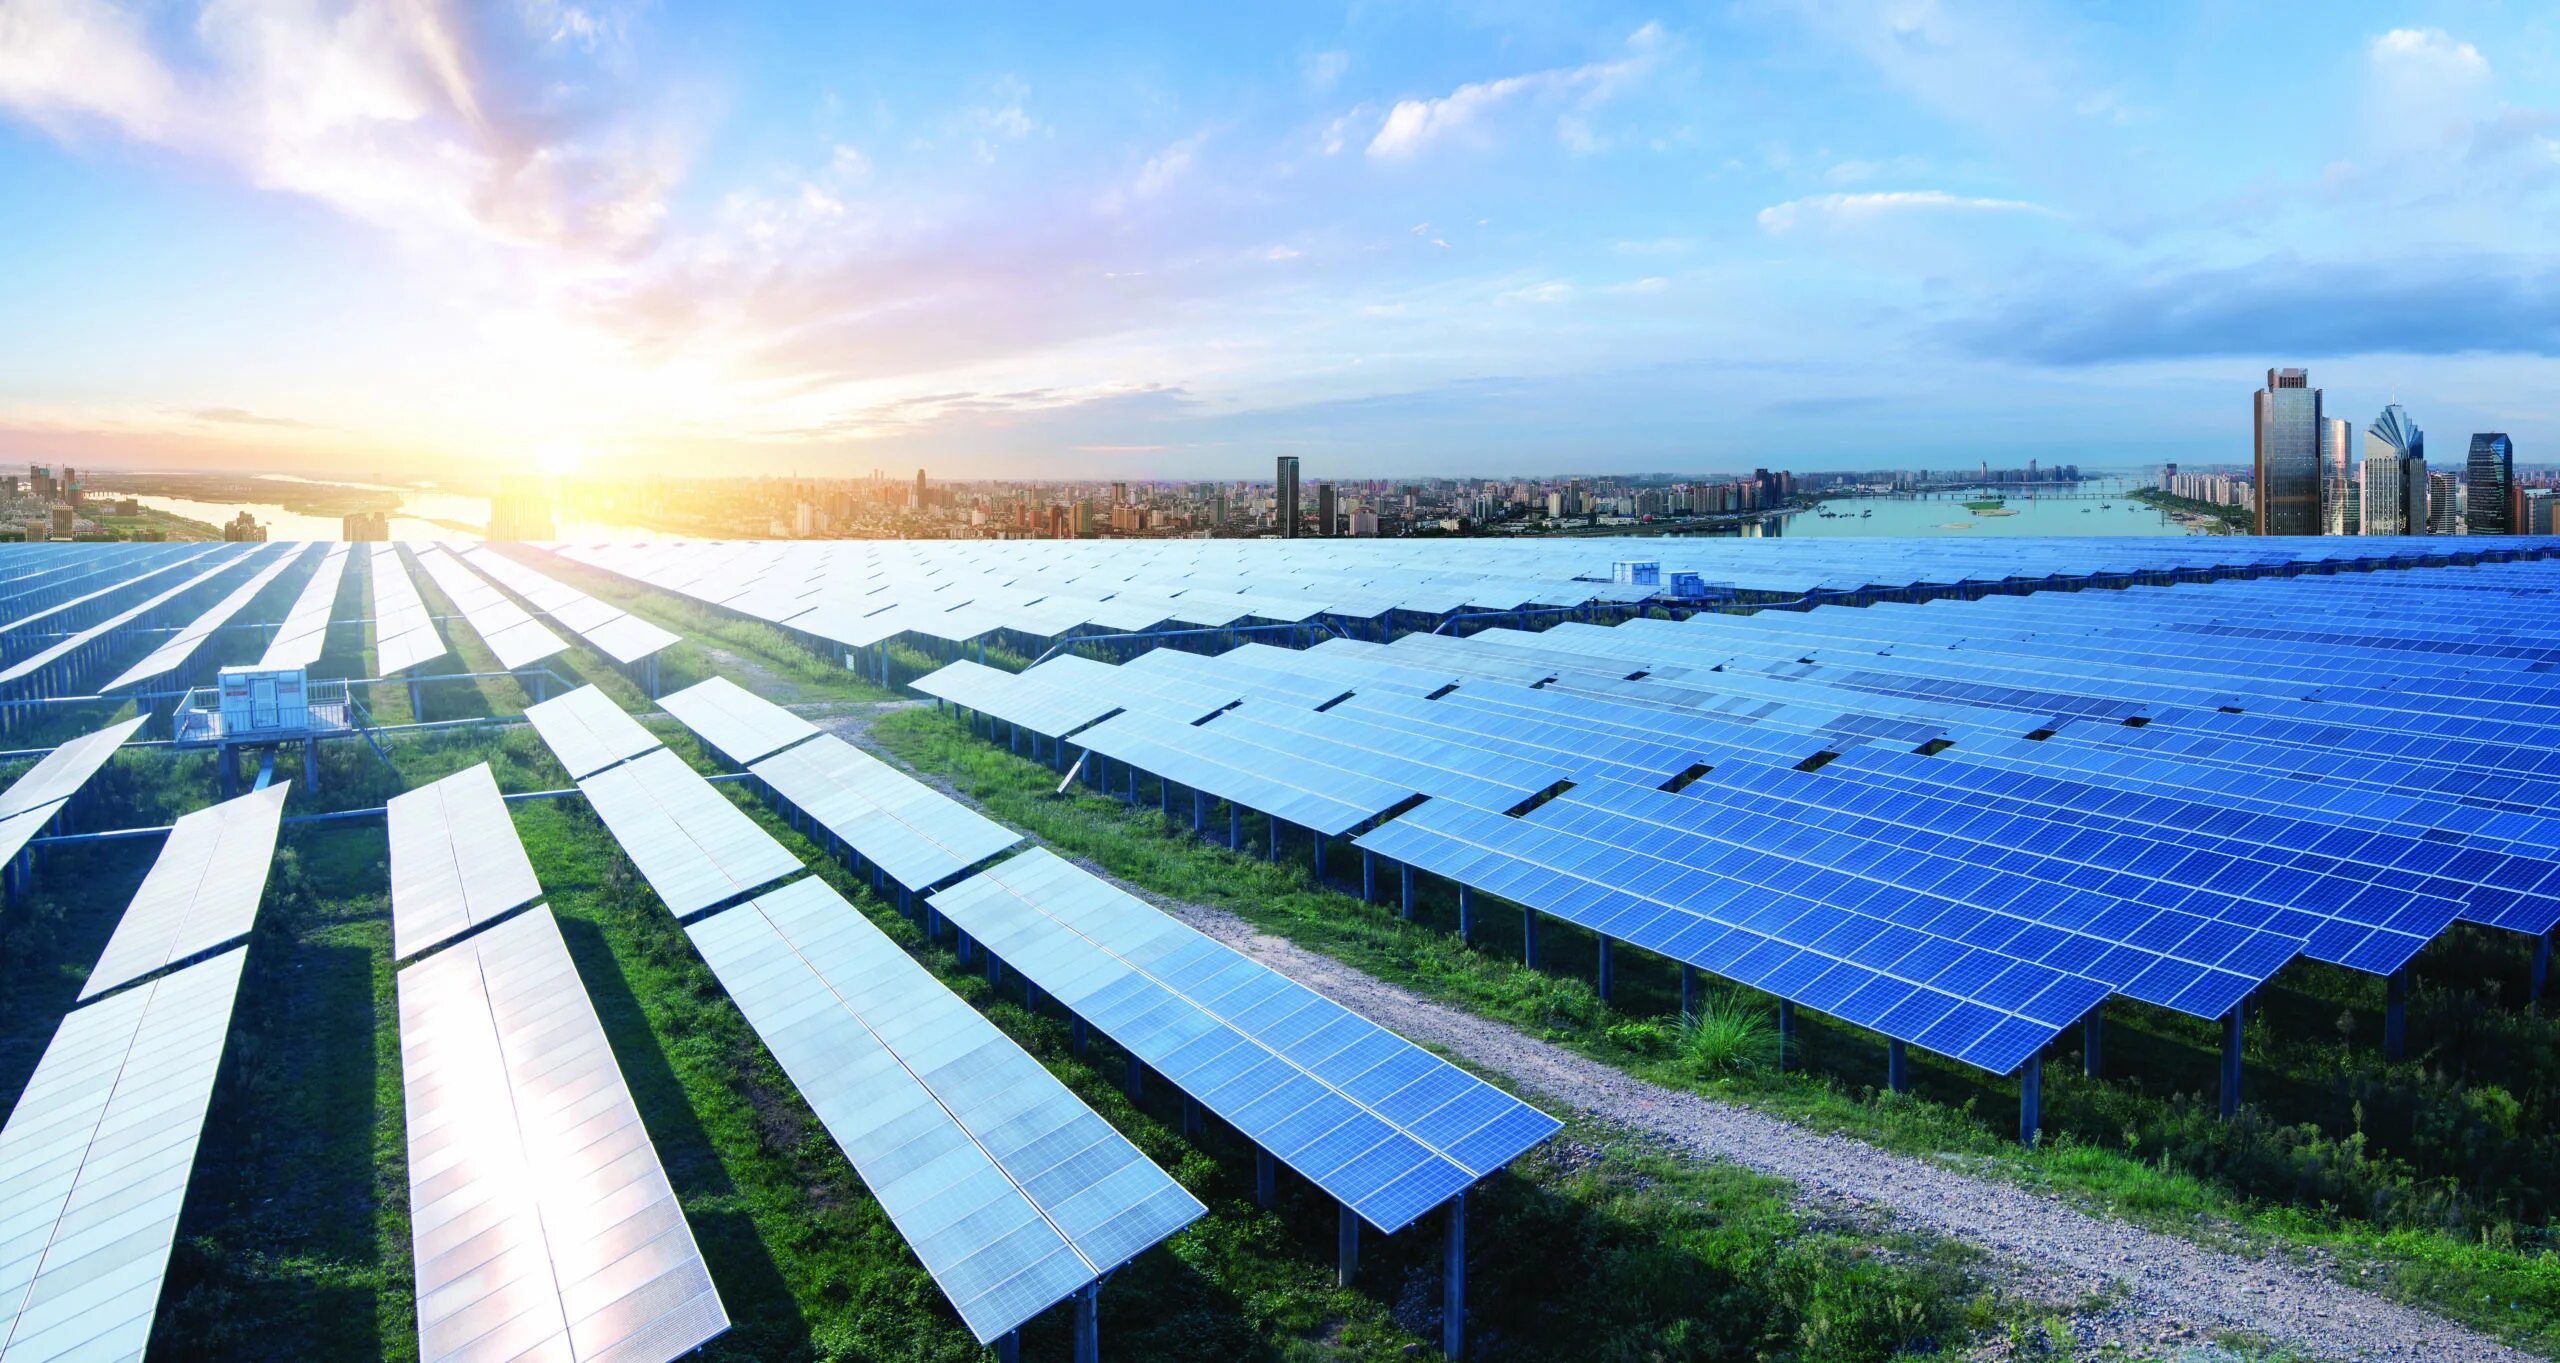 Производство солнечной энергии. Солнечные панели Eco Green Energy. Альтернативная Энергетика новой Зеландии. Energy Green Китай. Навоинская Солнечная электростанция.